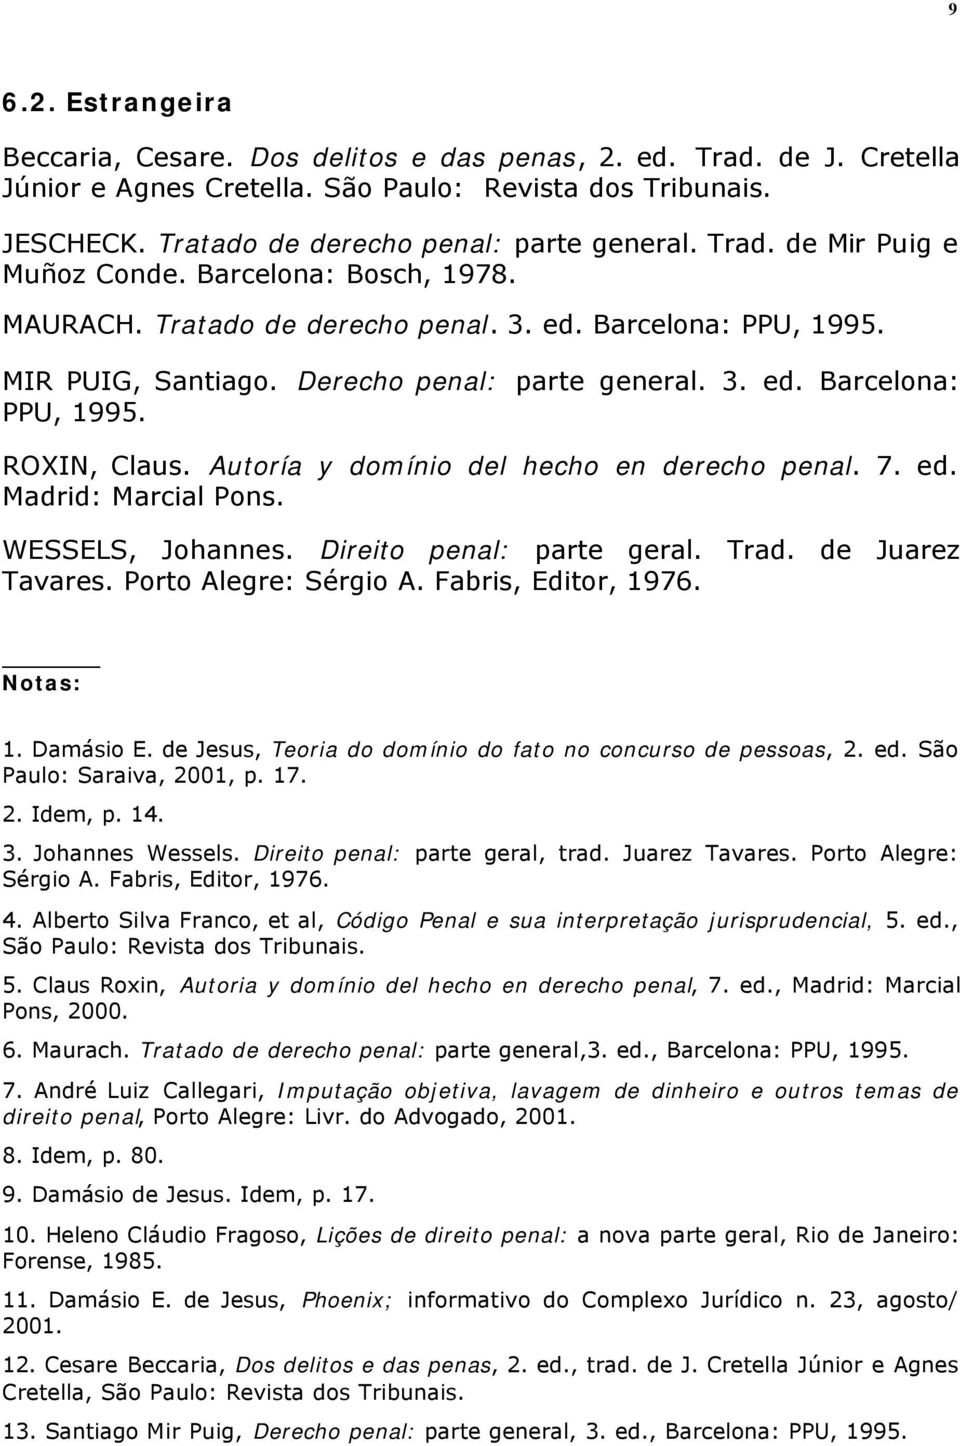 Autoría y domínio del hecho en derecho penal. 7. ed. Madrid: Marcial Pons. WESSELS, Johannes. Direito penal: parte geral. Trad. de Juarez Tavares. Porto Alegre: Sérgio A. Fabris, Editor, 1976.